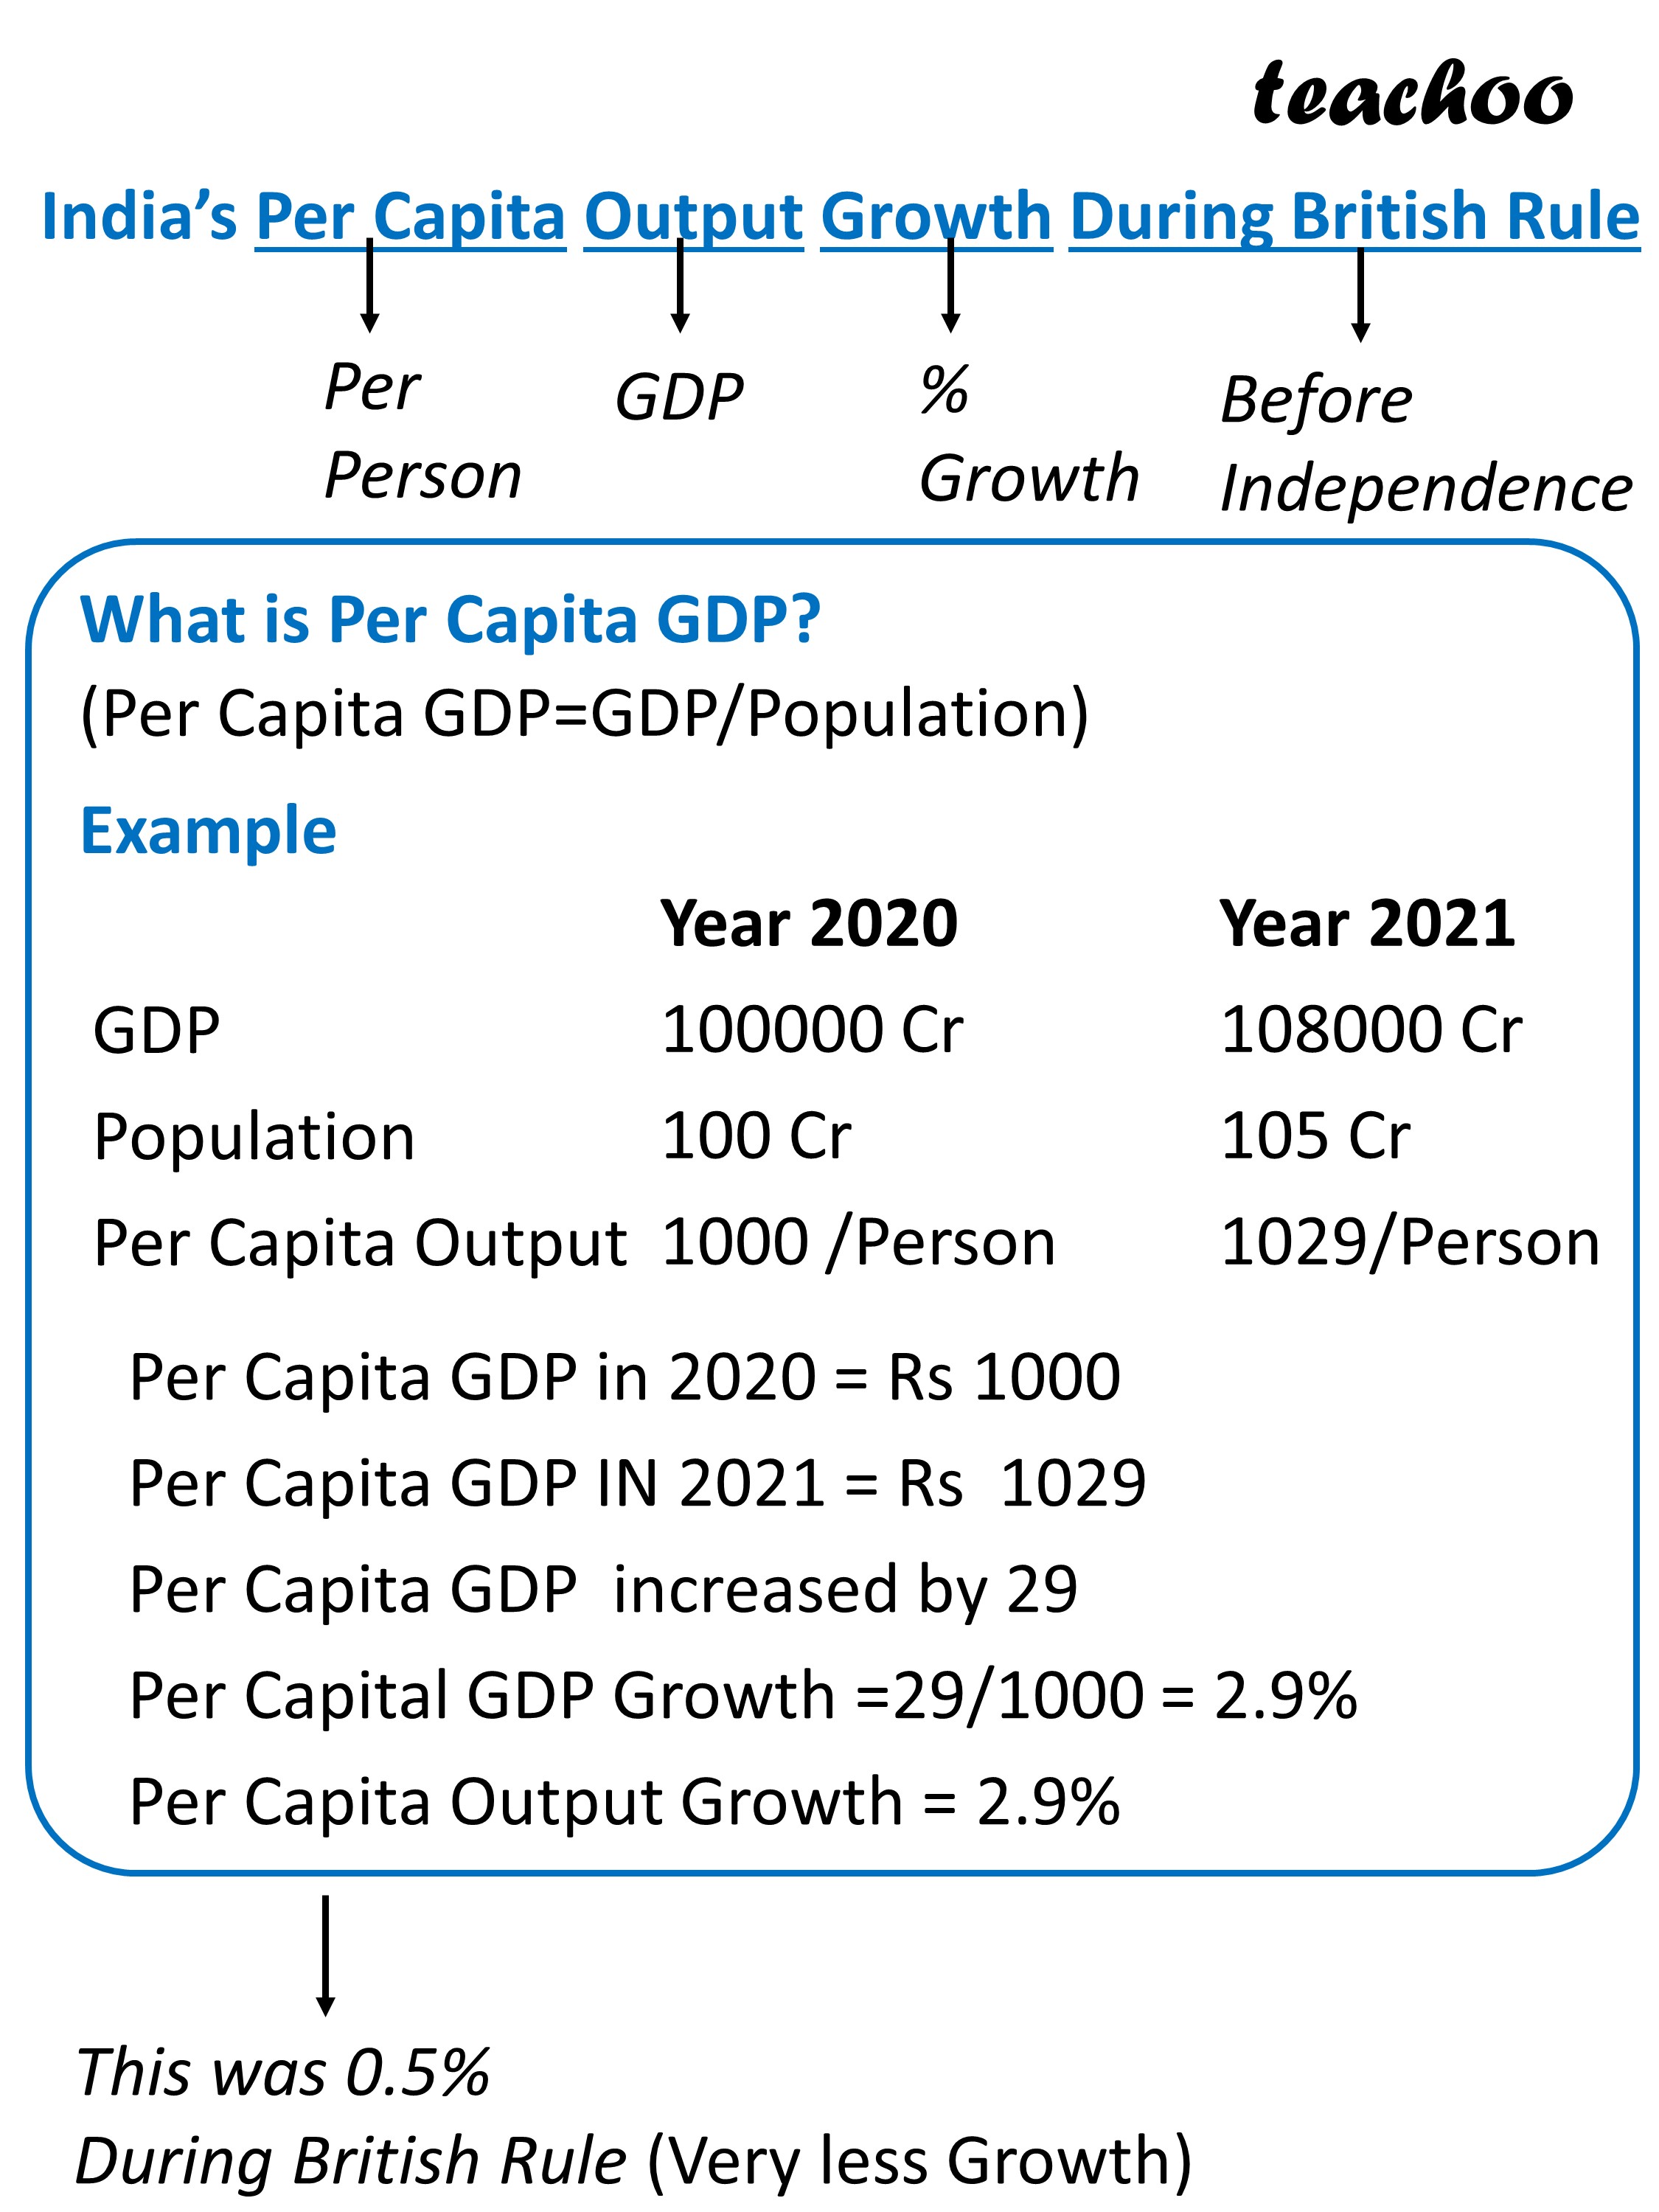 Indias Per Capita Output Growth During British Rule - Teachoo.JPG